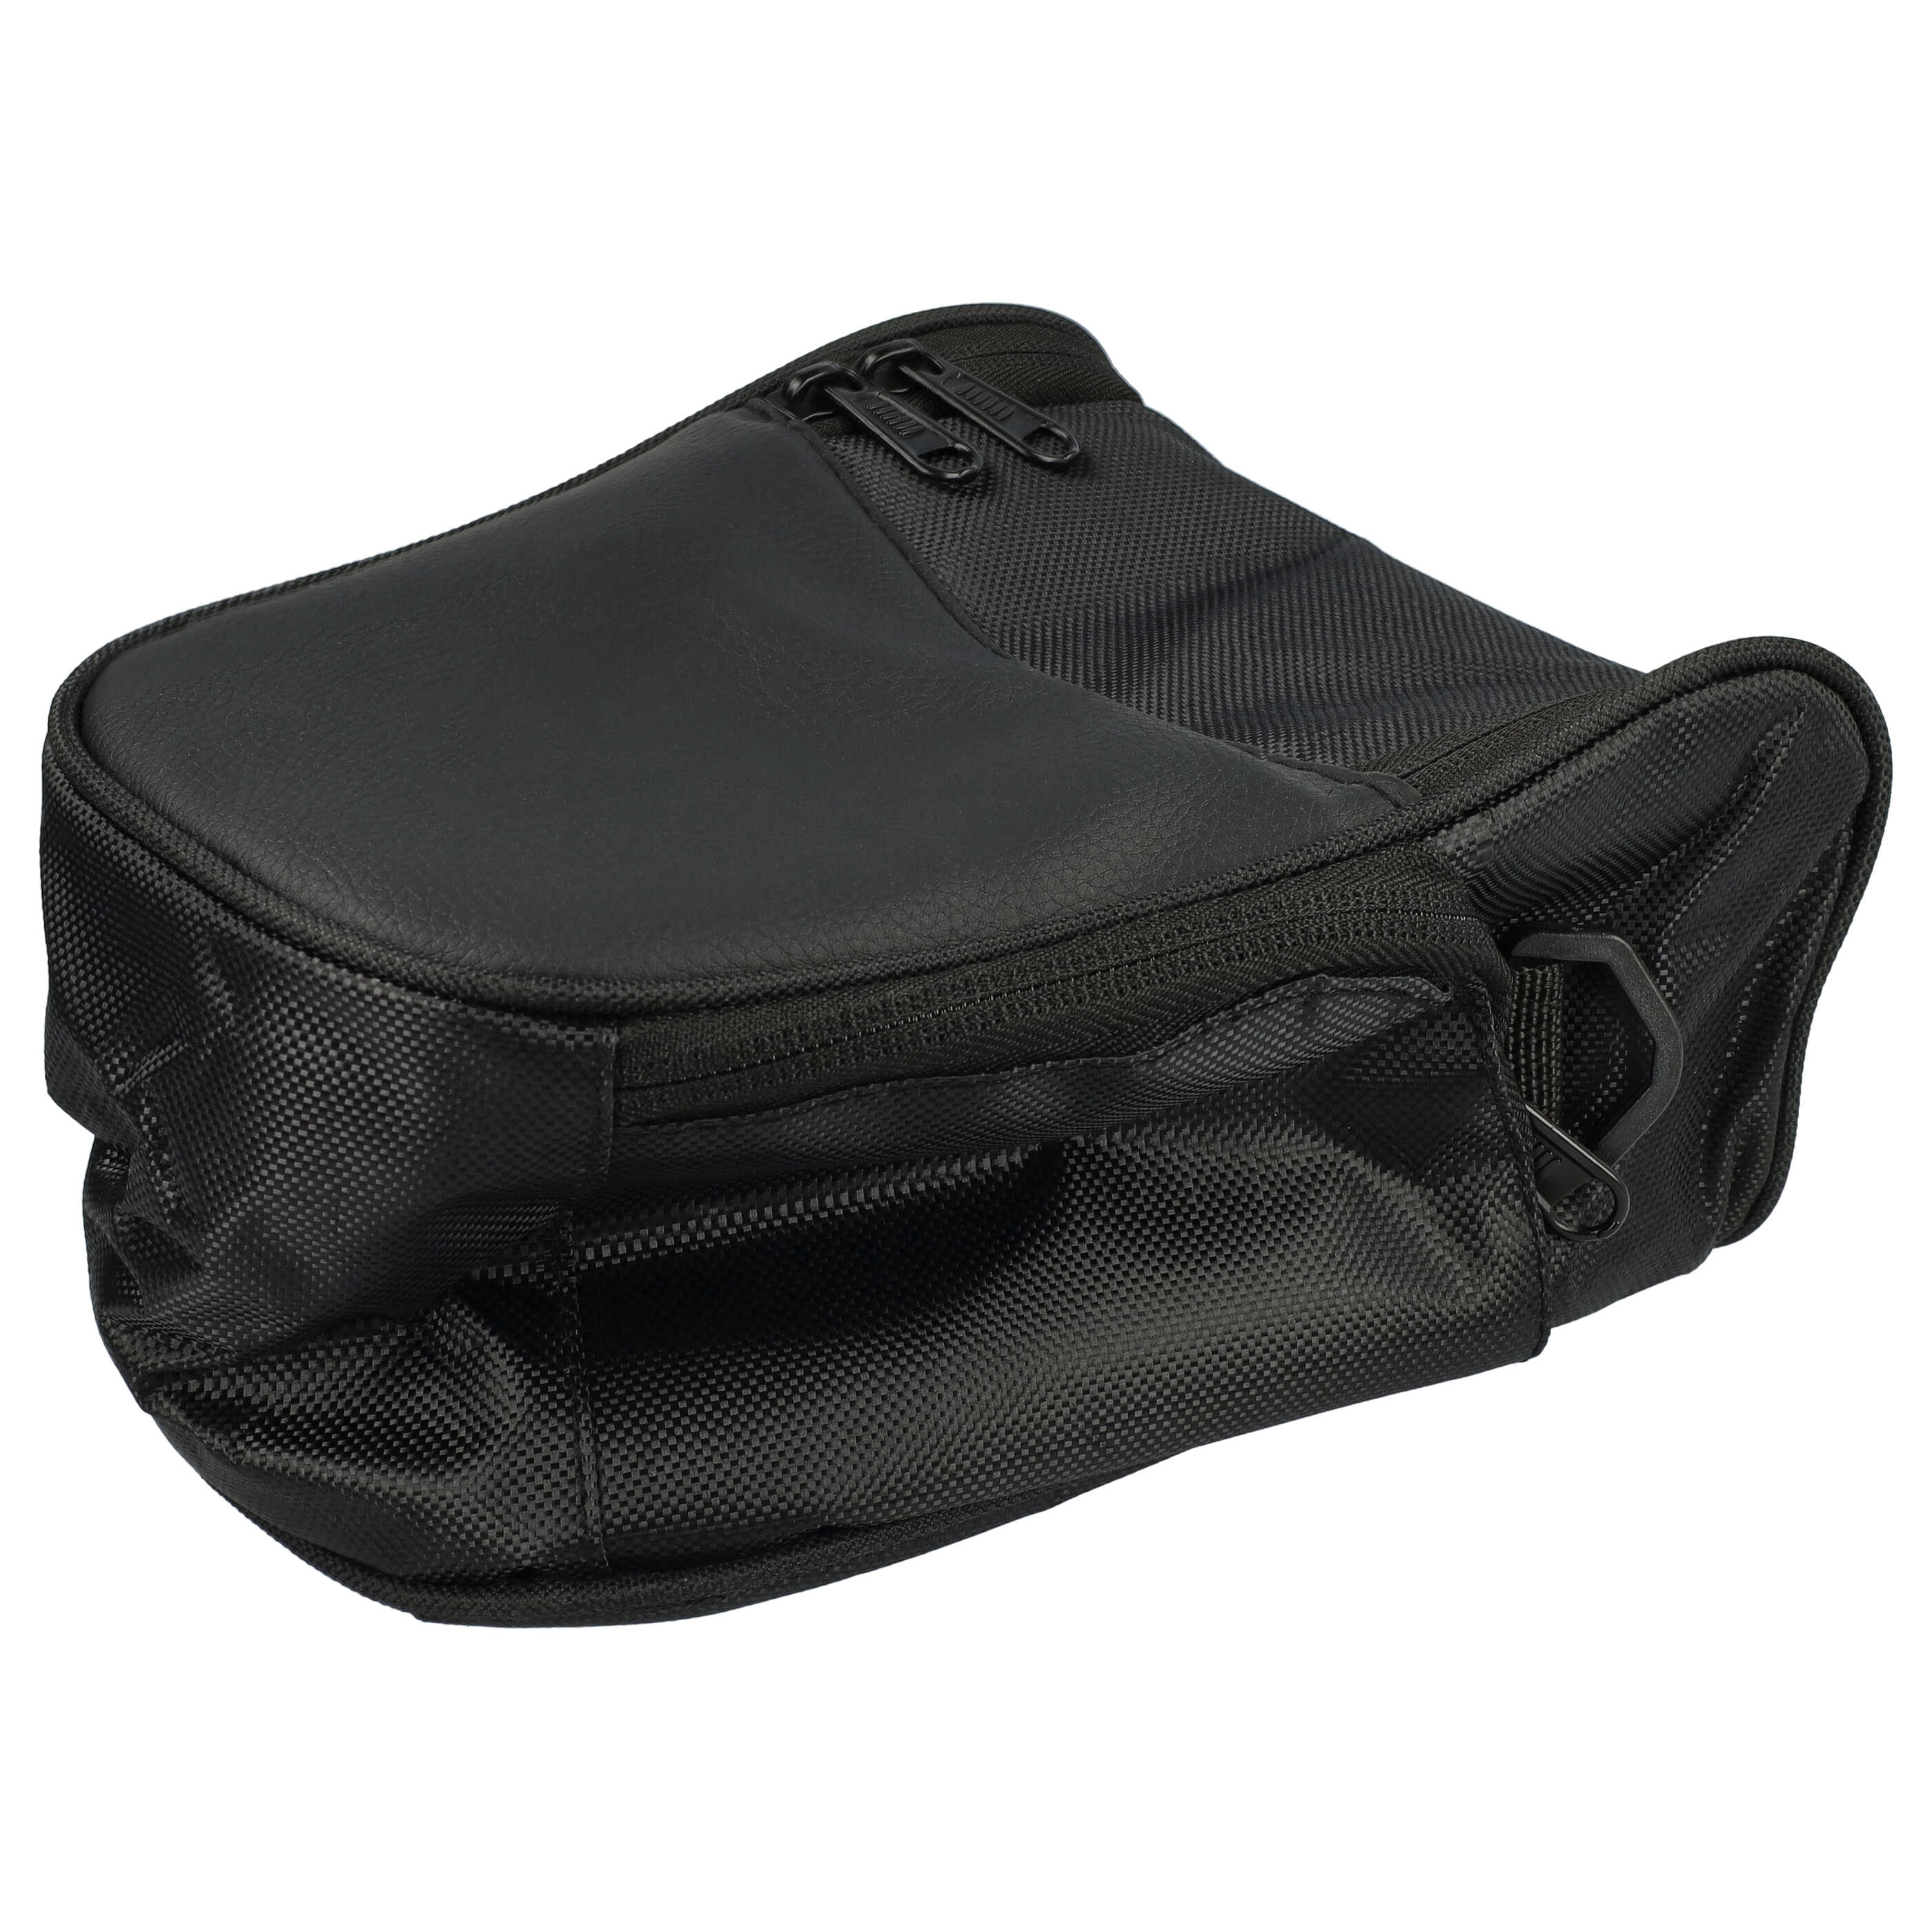 Tasche passend für Pentax Kamera u.a. - Schwarz, Inkl. Schultergurt, Mit Gürtelschlaufe